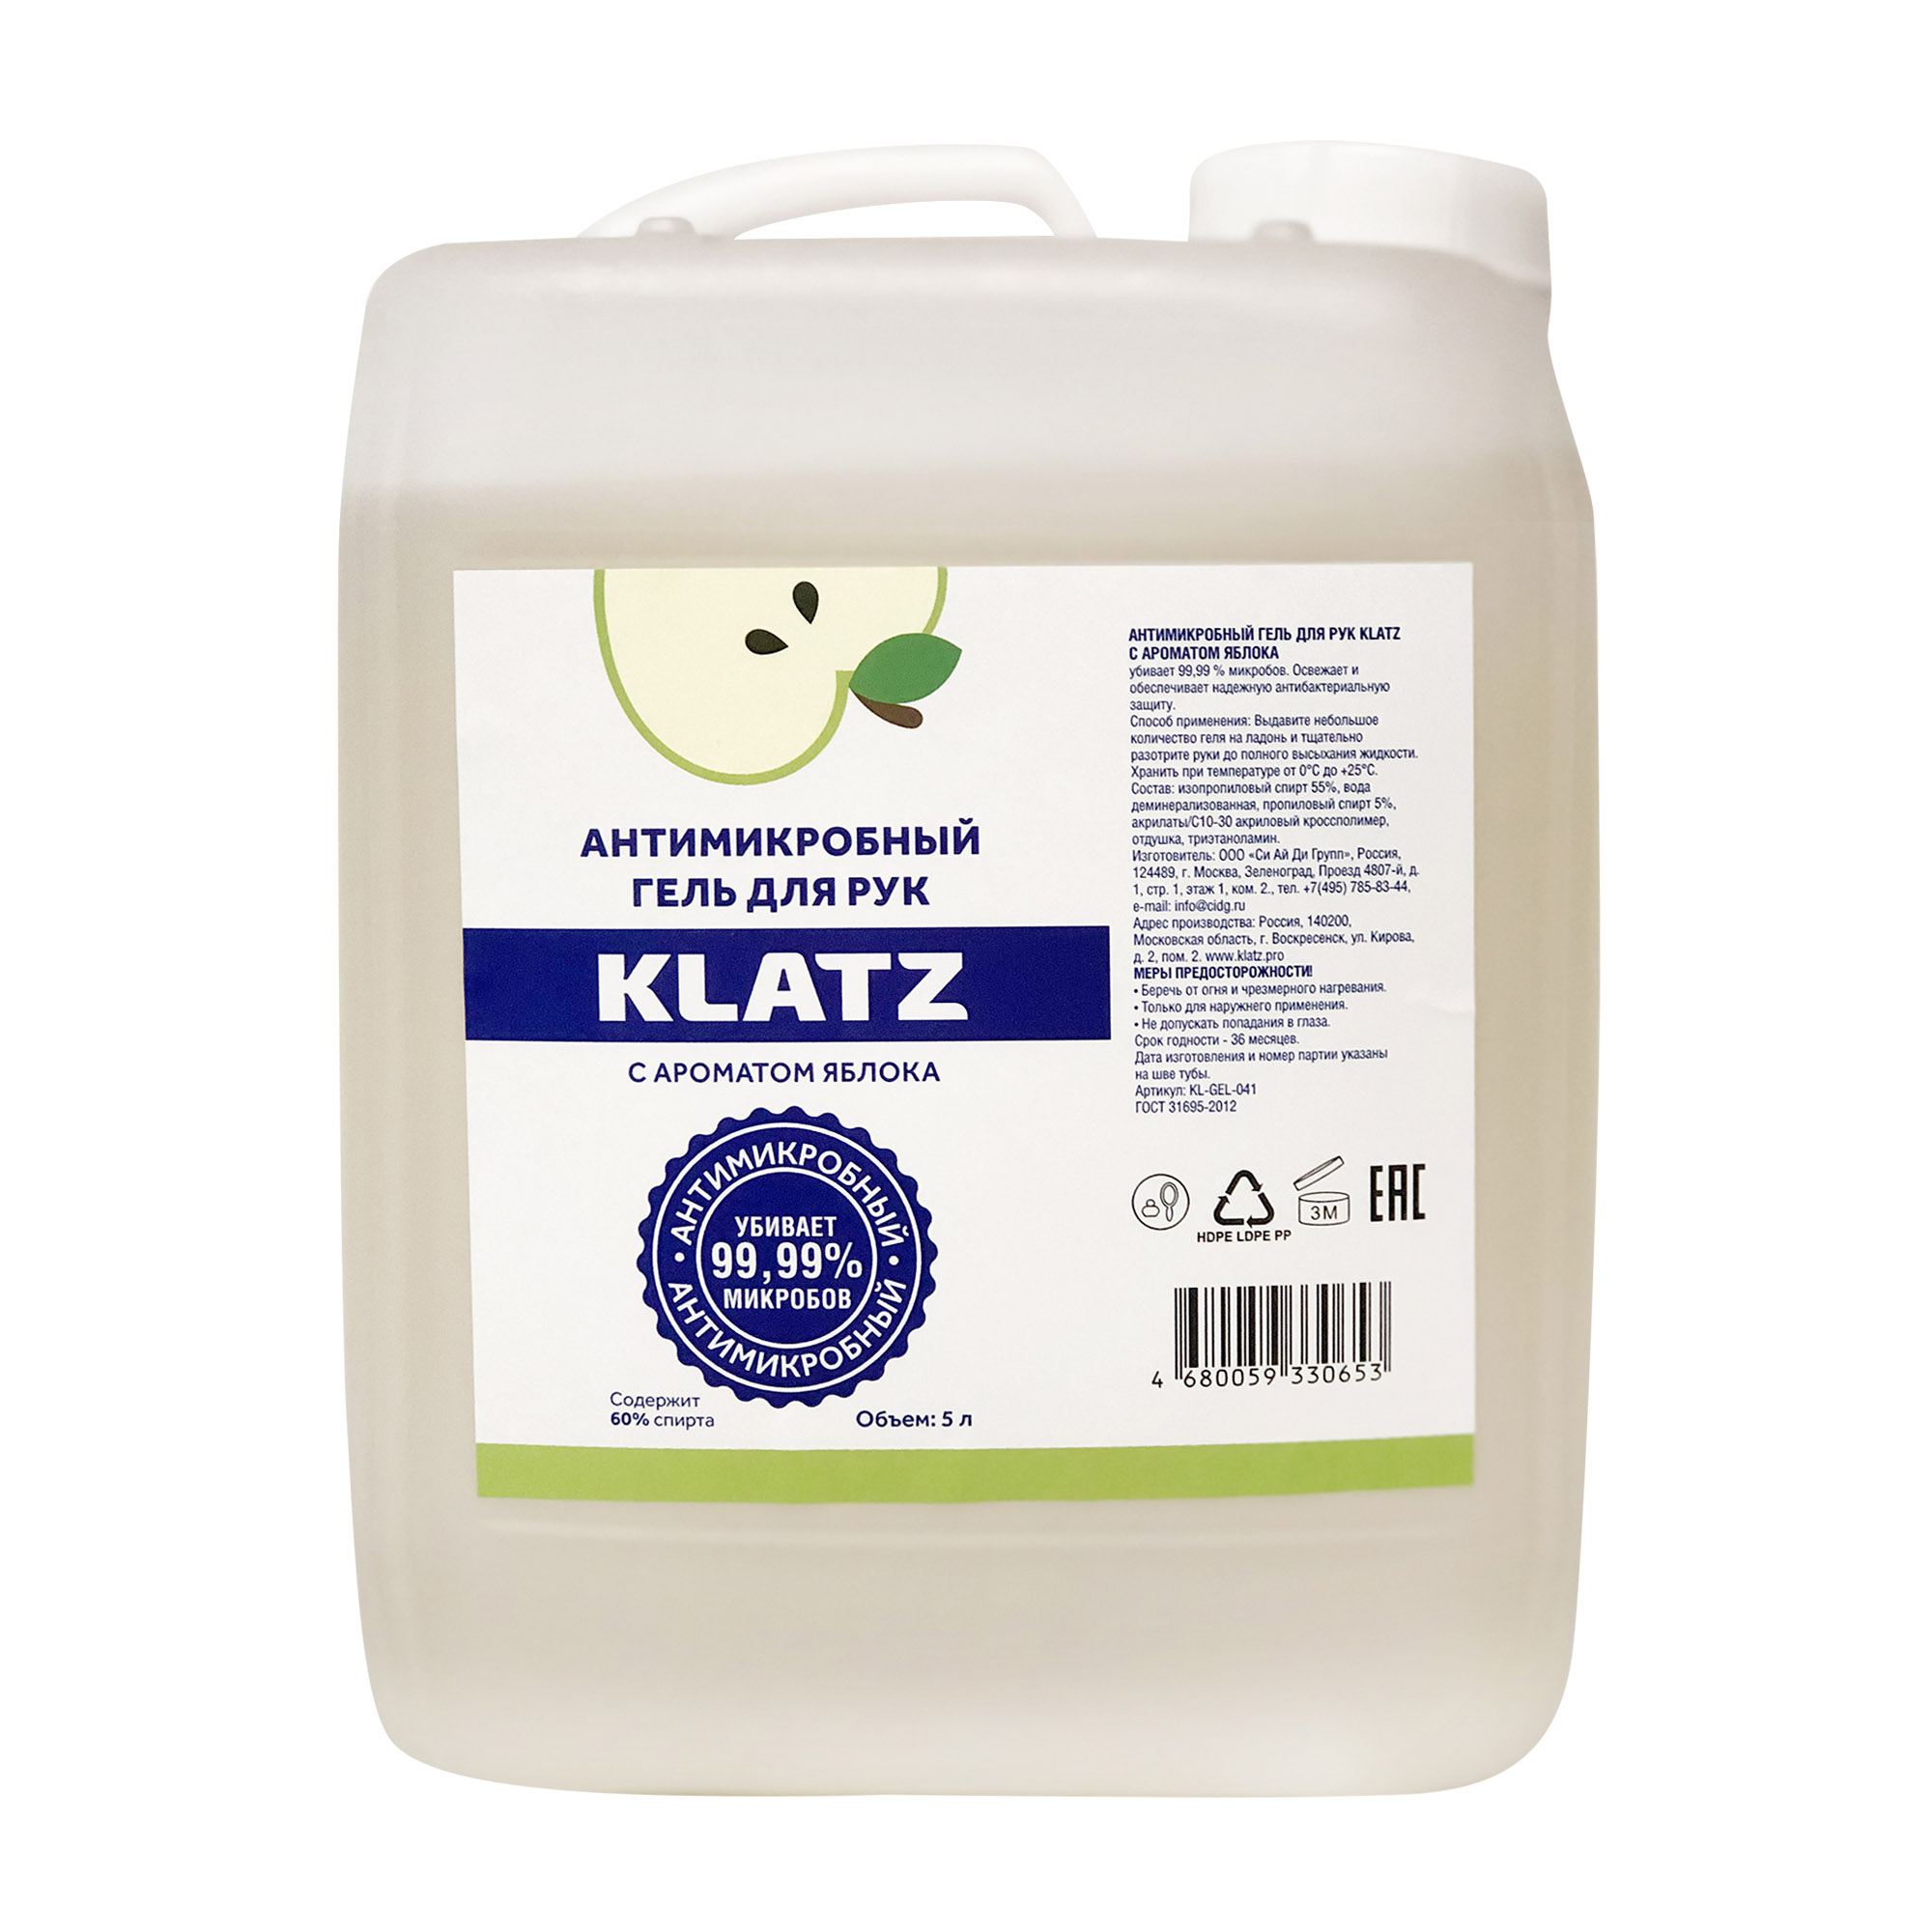 Klatz Антимикробный гель для рук с ароматом яблока, 5 л (Klatz, Antimicrobial)